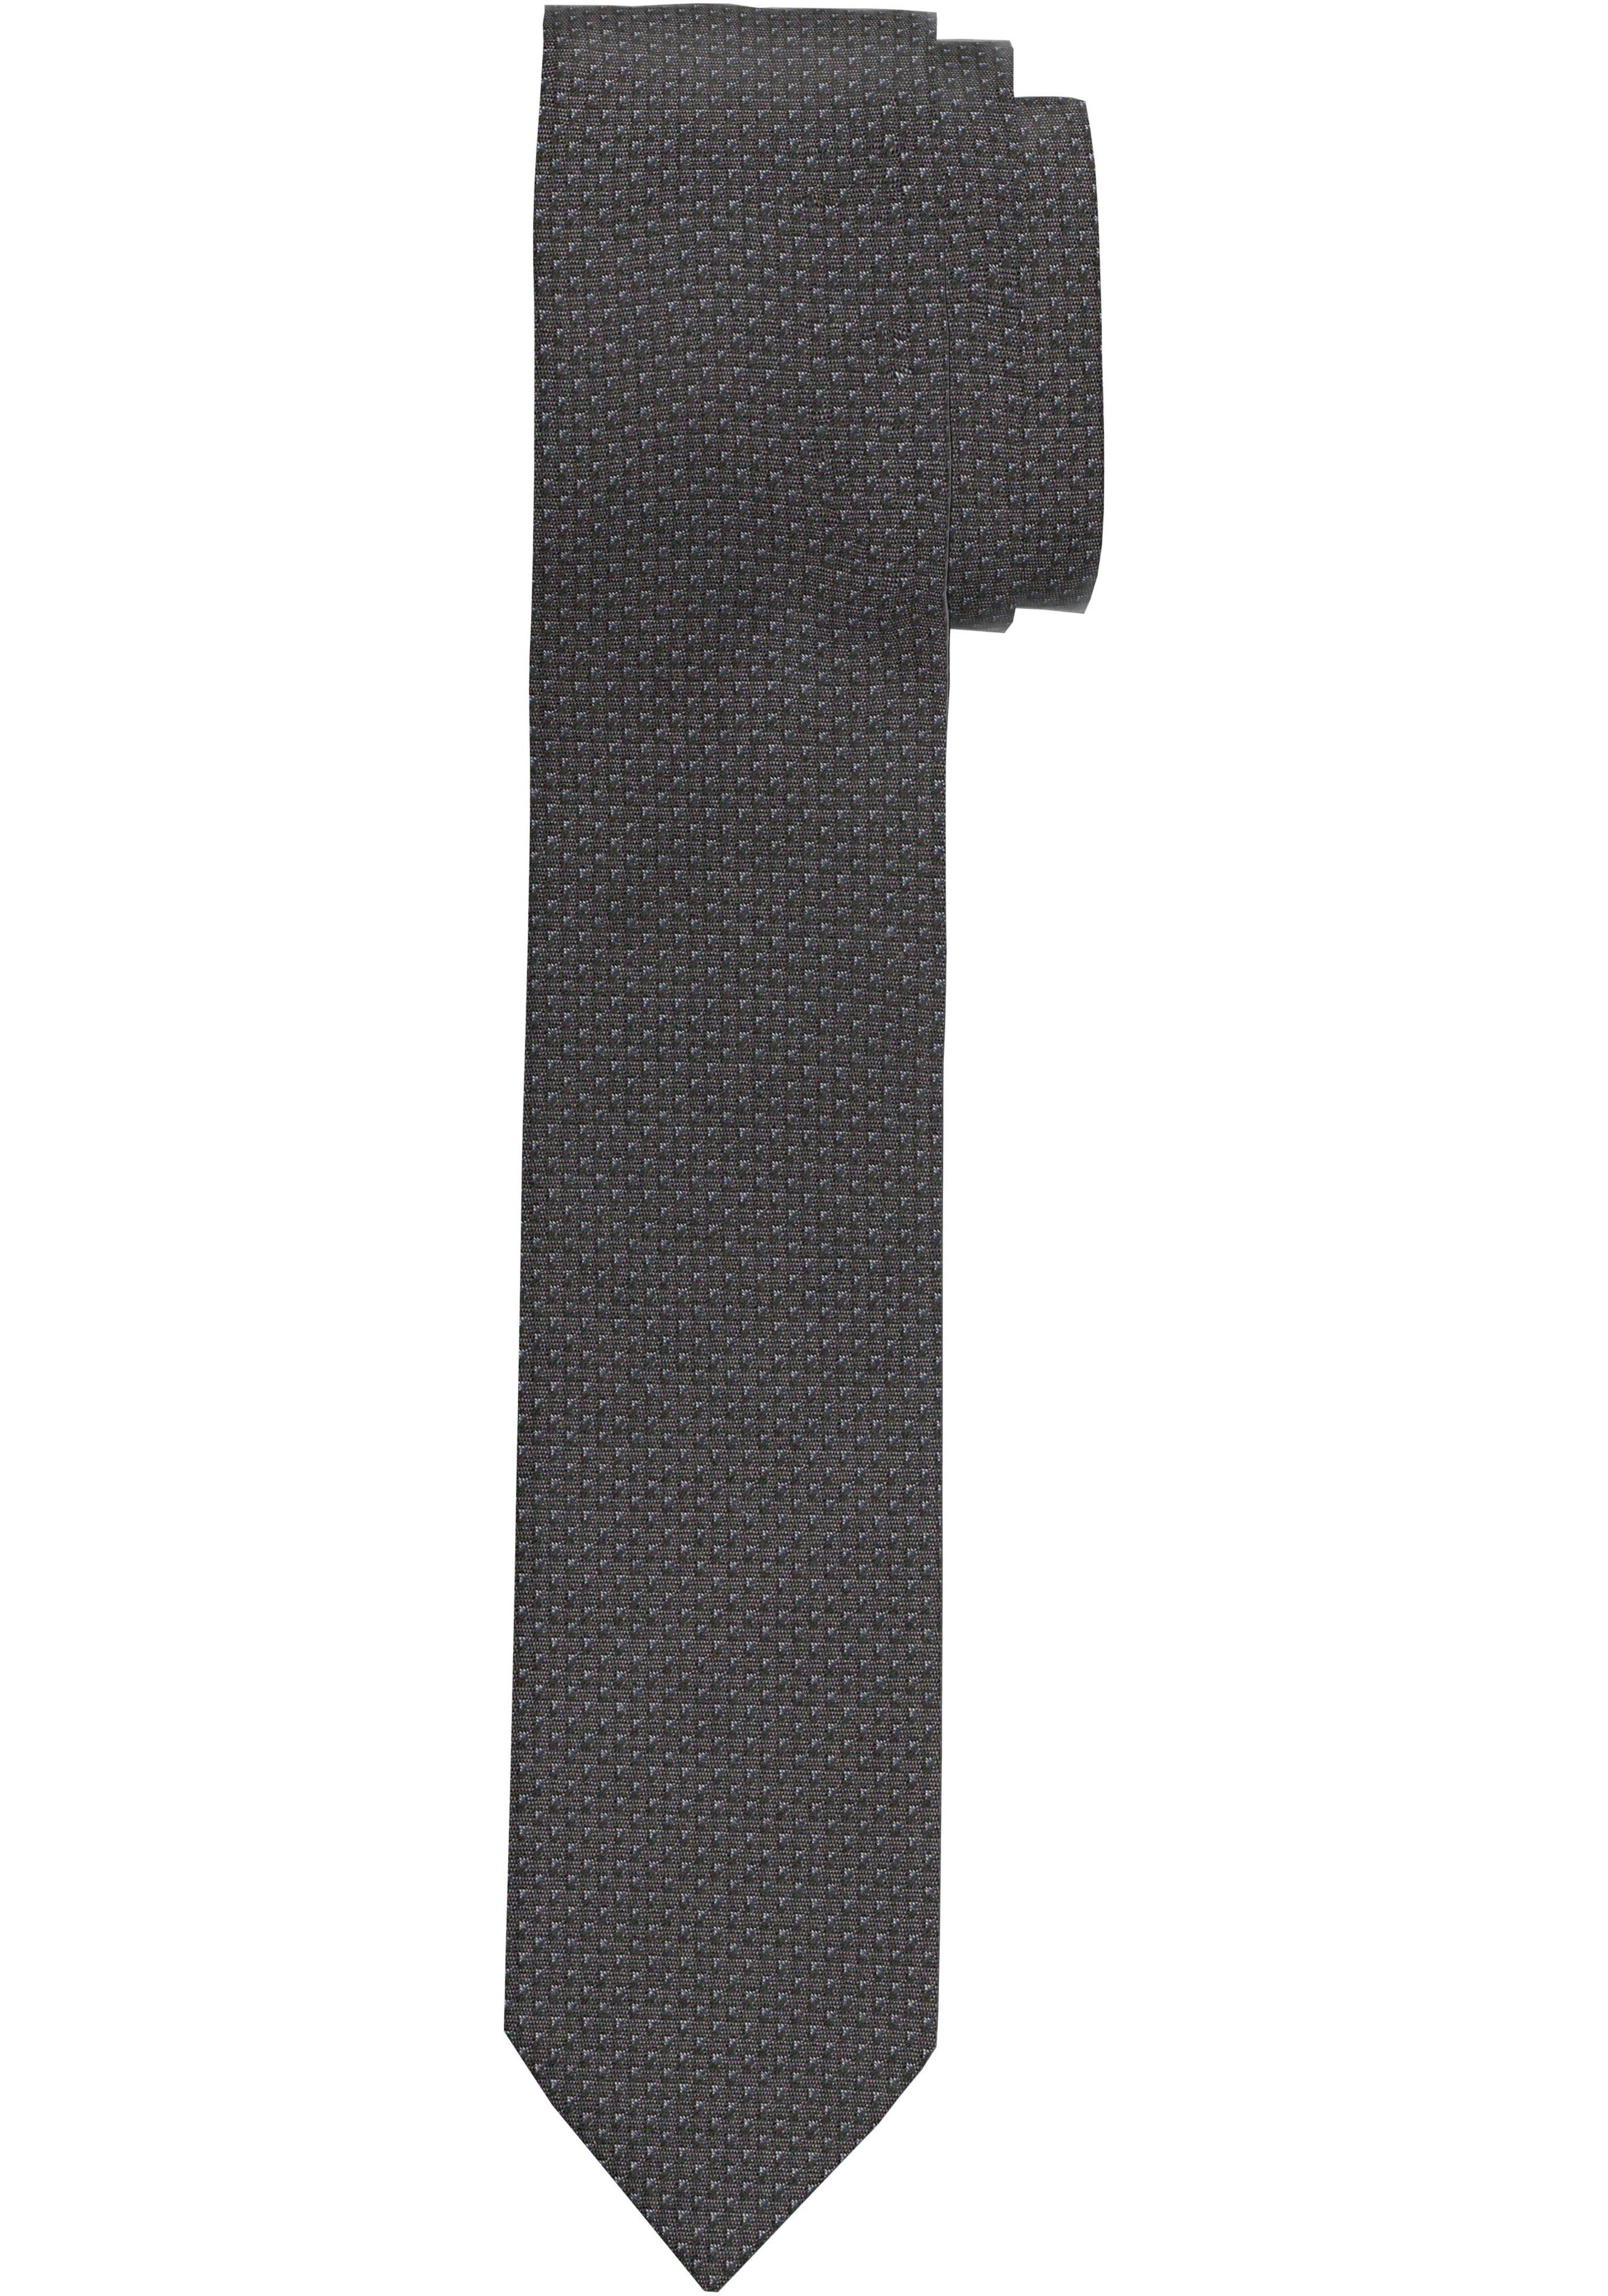 OLYMP Krawatte jedem zu Anlass Krawatte, für Strukturierte Kombinationen Perfekt vielfältige